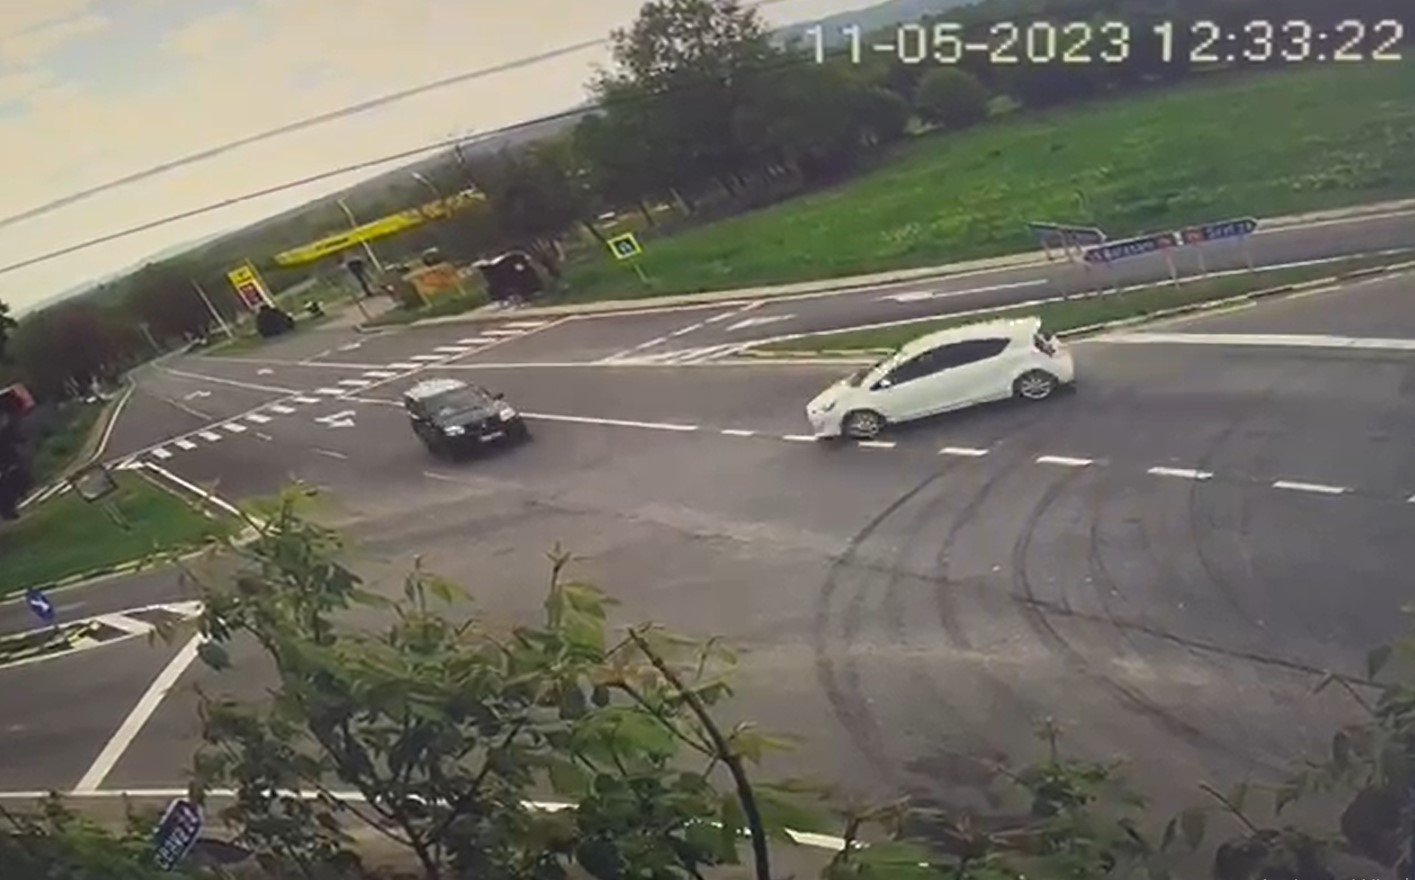  VIDEO – Două autoturisme implicate într-un grav accident rutier: şase persoane au ajuns la spital